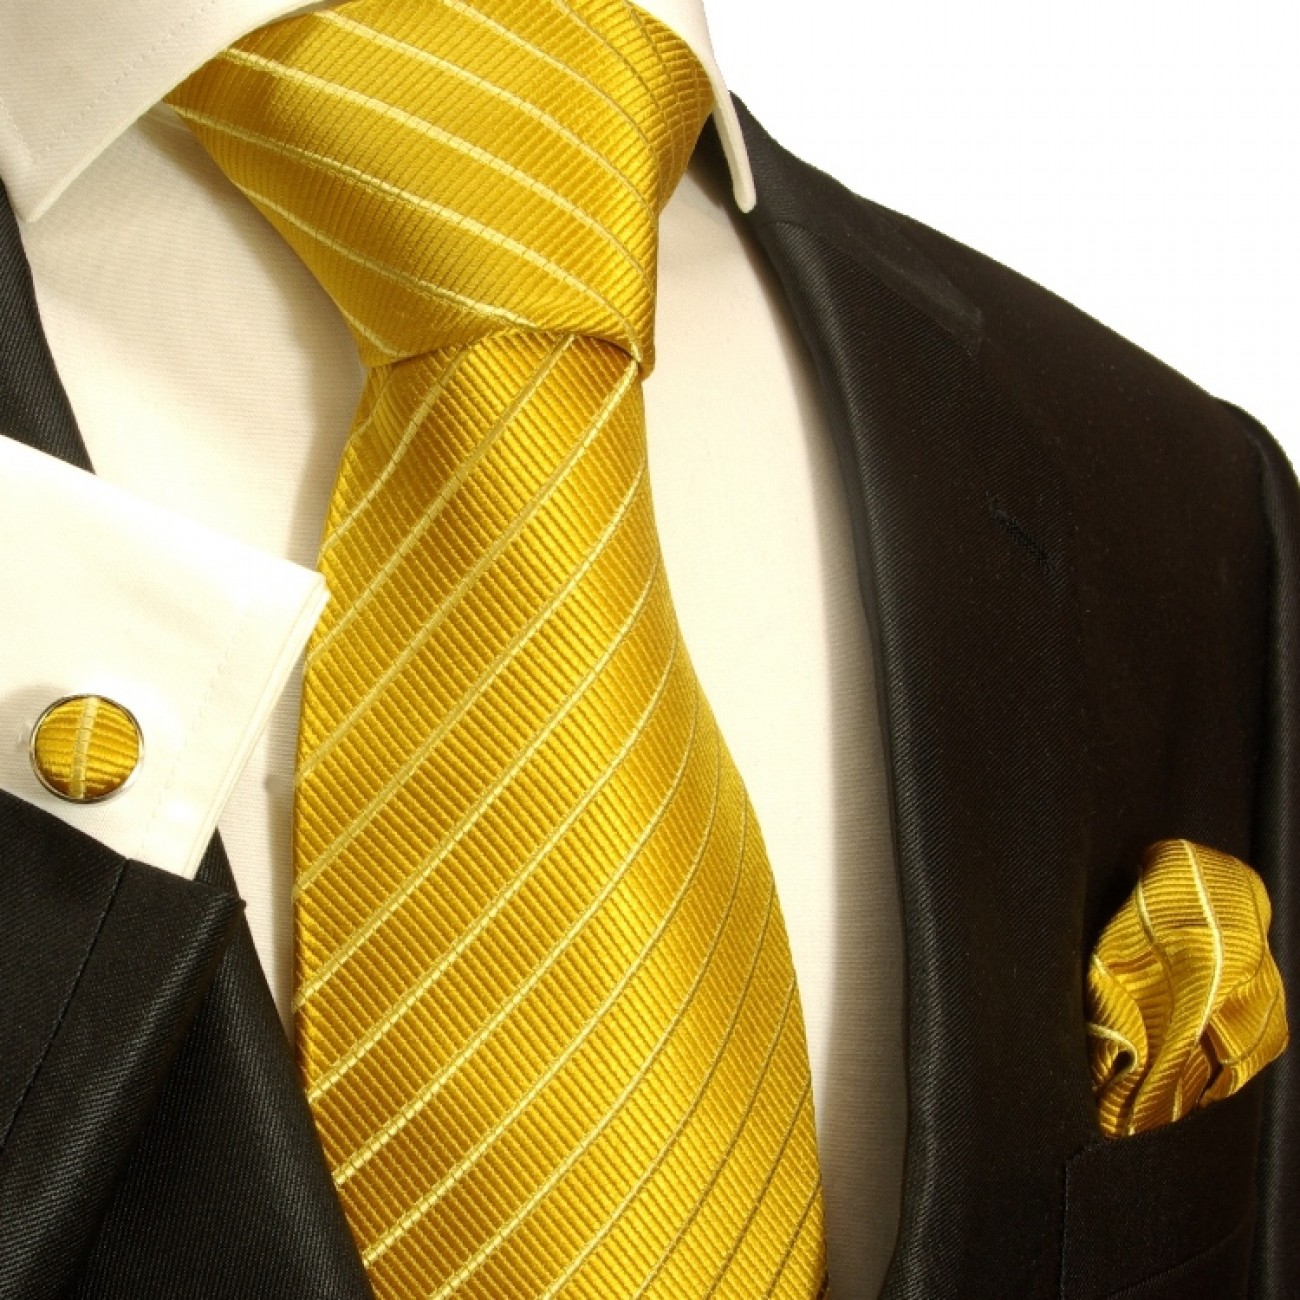 Gold necktie set 3pcs 100% silk tie + handkerchief + cufflinks by Paul ...